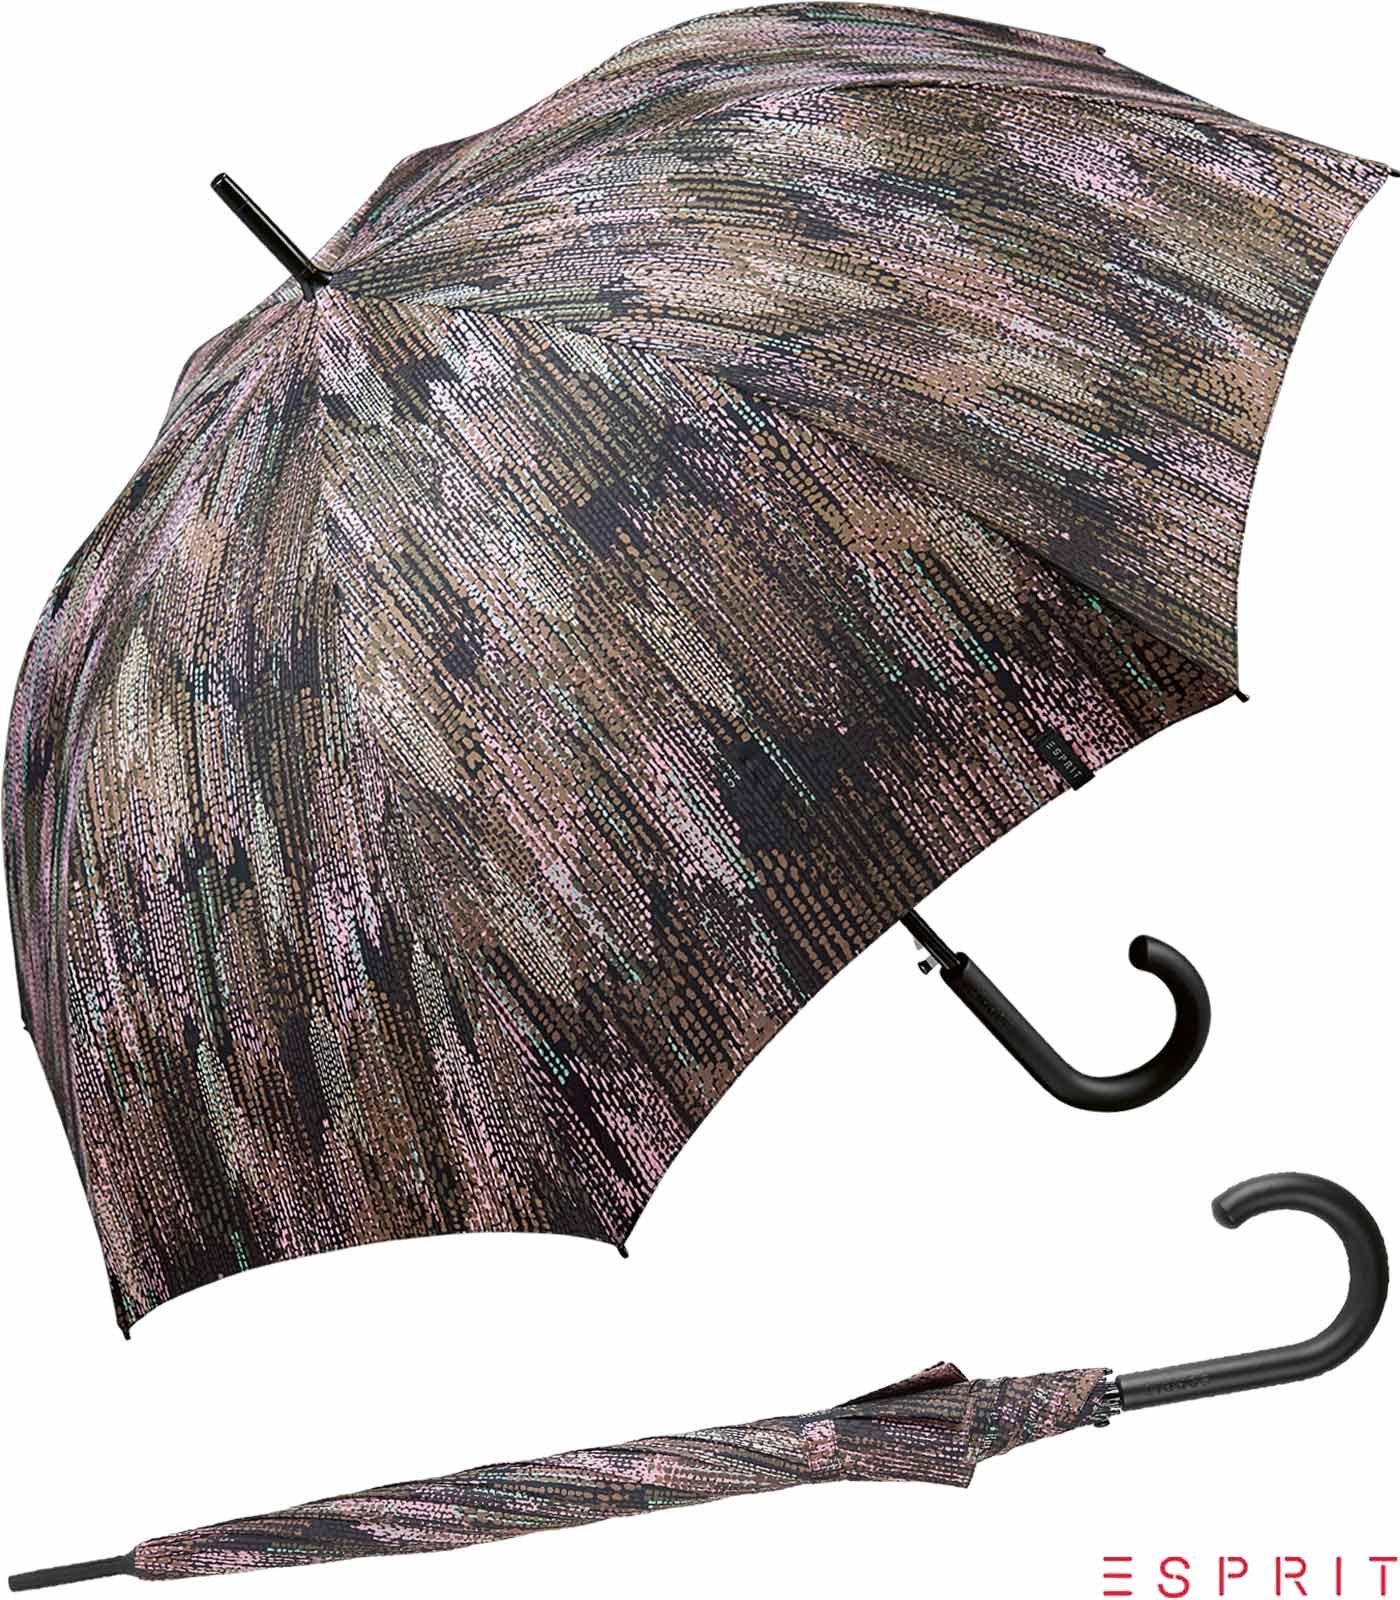 Esprit Langregenschirm Damen - Auf-Automatik gray, stabil, Blurred Edges Optik in - verwaschener mit groß, taupe gedeckter braun